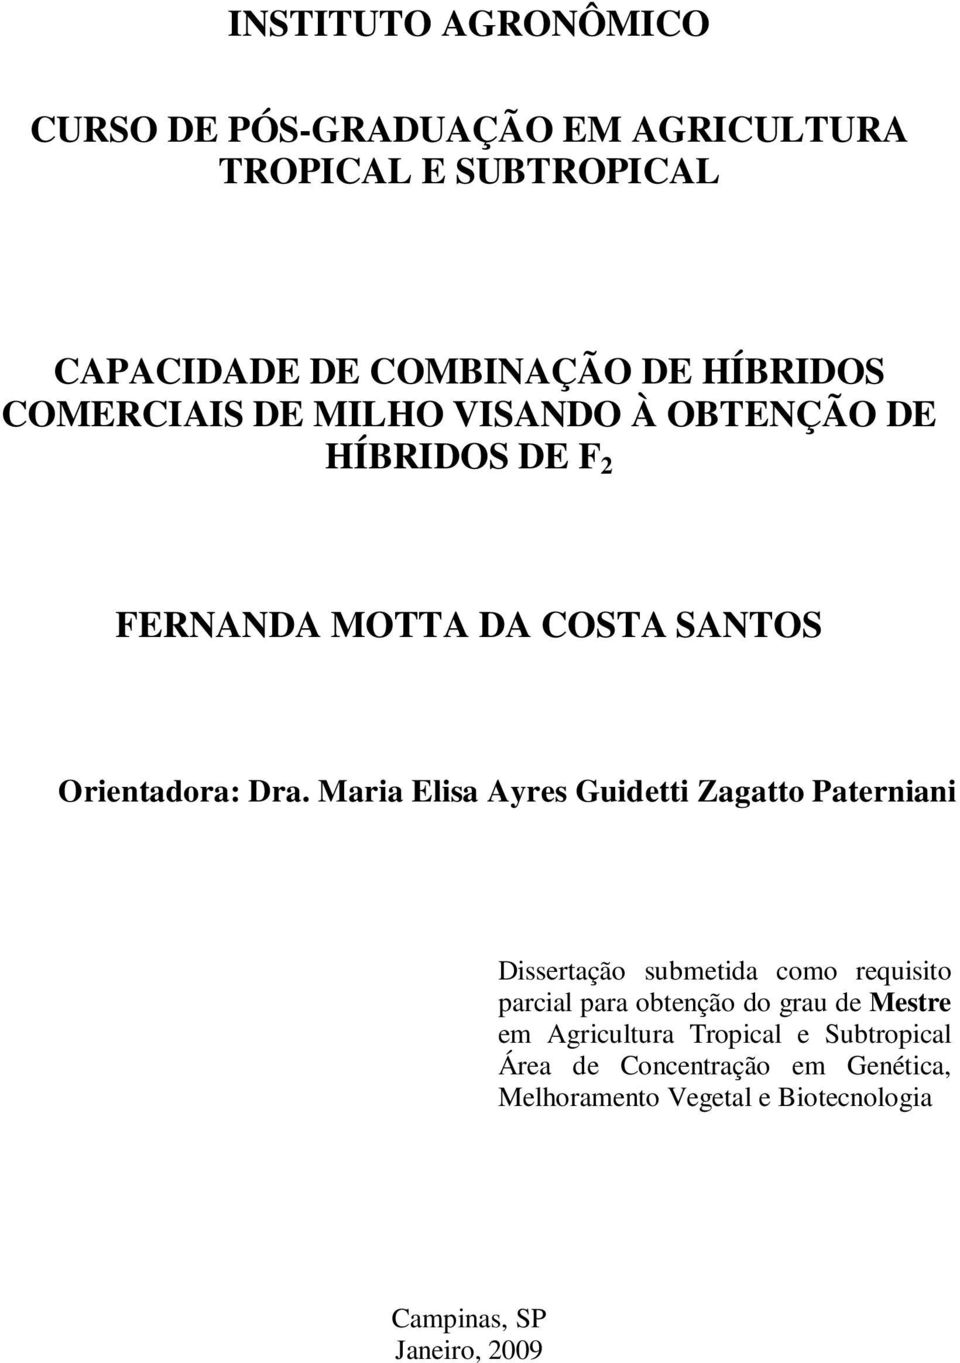 Maria Elisa Ayres Guidetti Zagatto Paterniani Dissertação submetida como requisito parcial para obtenção do grau de